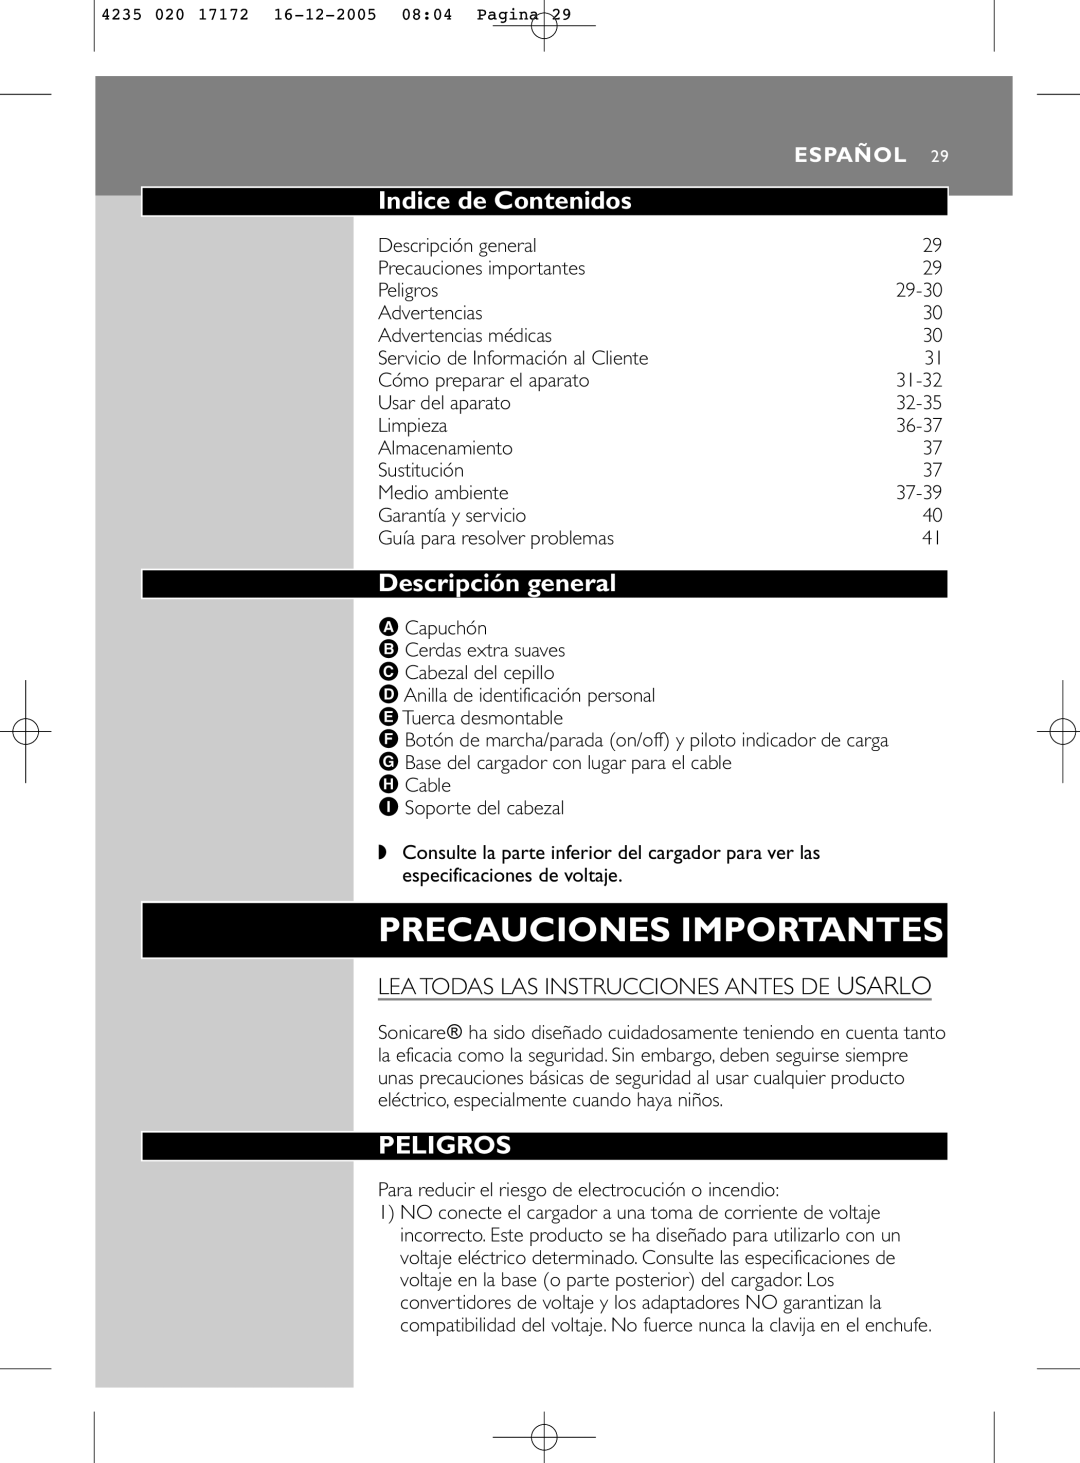 Sonicare e5000 Indice de Contenidos, Descripción general, Peligros, Lea Todas Las Instrucciones Antes De Usarlo, Español 